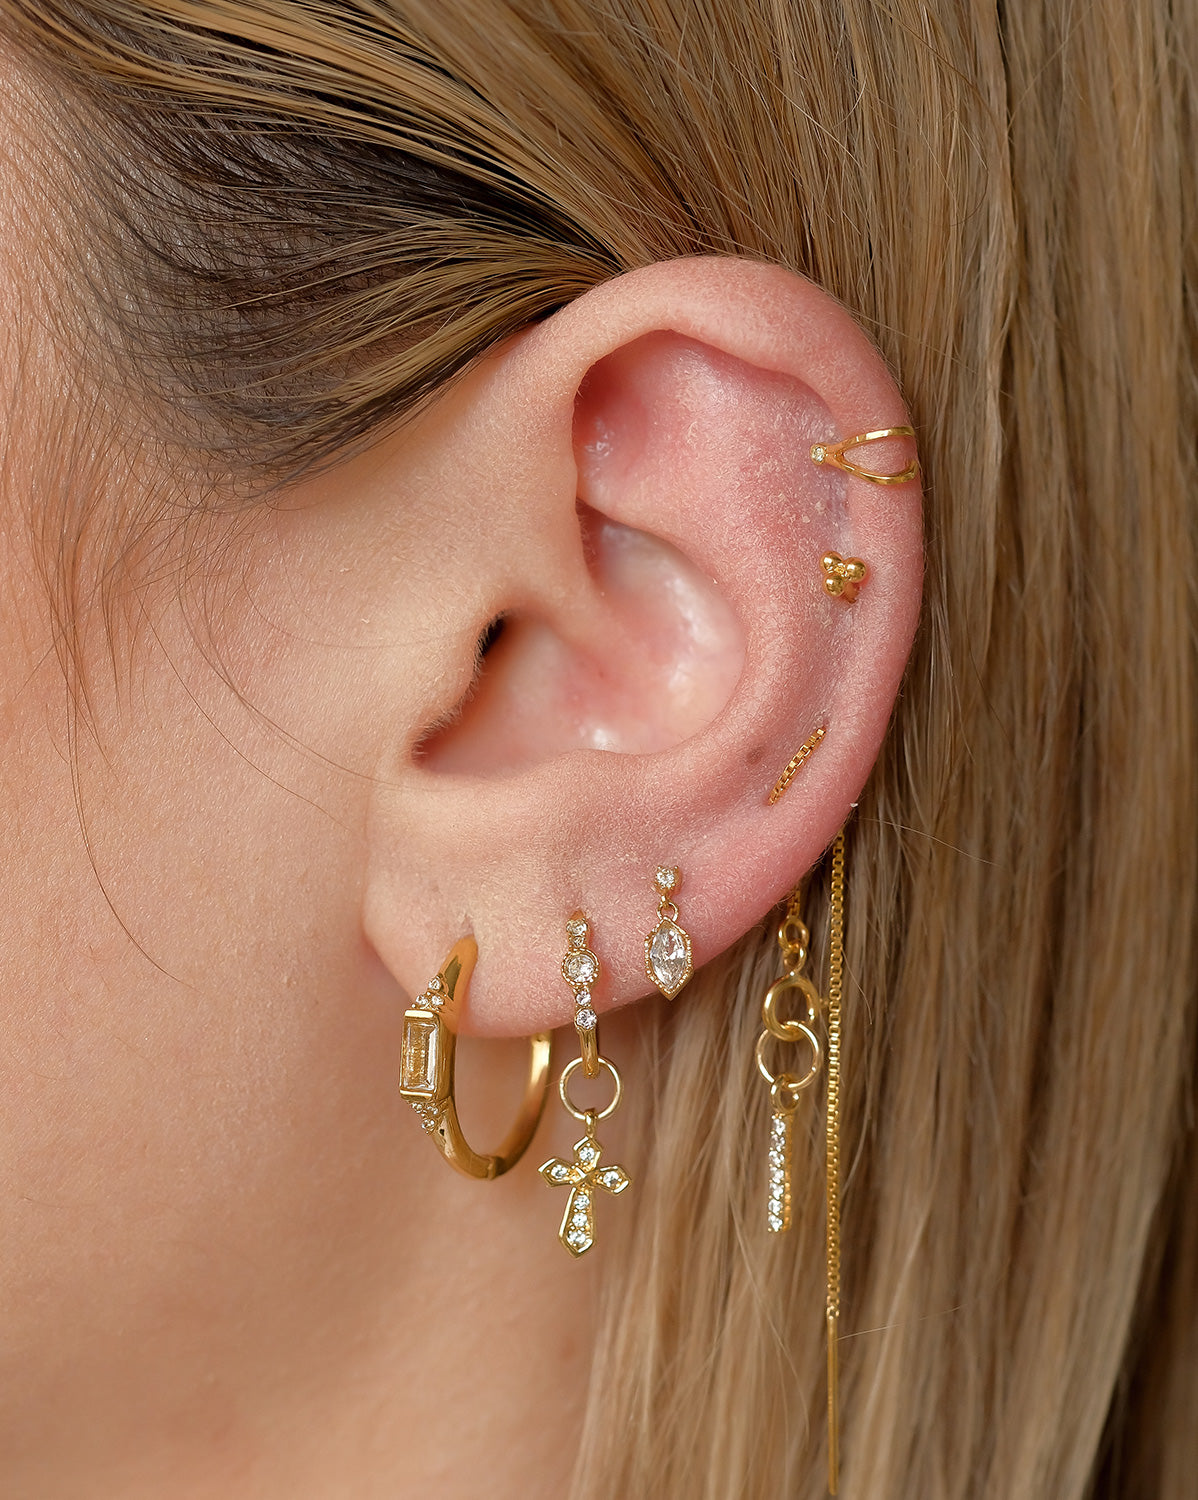 Buy Gold Ear Cuff, Adjustable Ear Cuff, Dainty Ear Cuff, Cartilage Ear  Cuff, Simple Ear Cuff, Minimal Ear Cuff, Gold Earrings, Huggie Ear Cuff  Online in India - Etsy